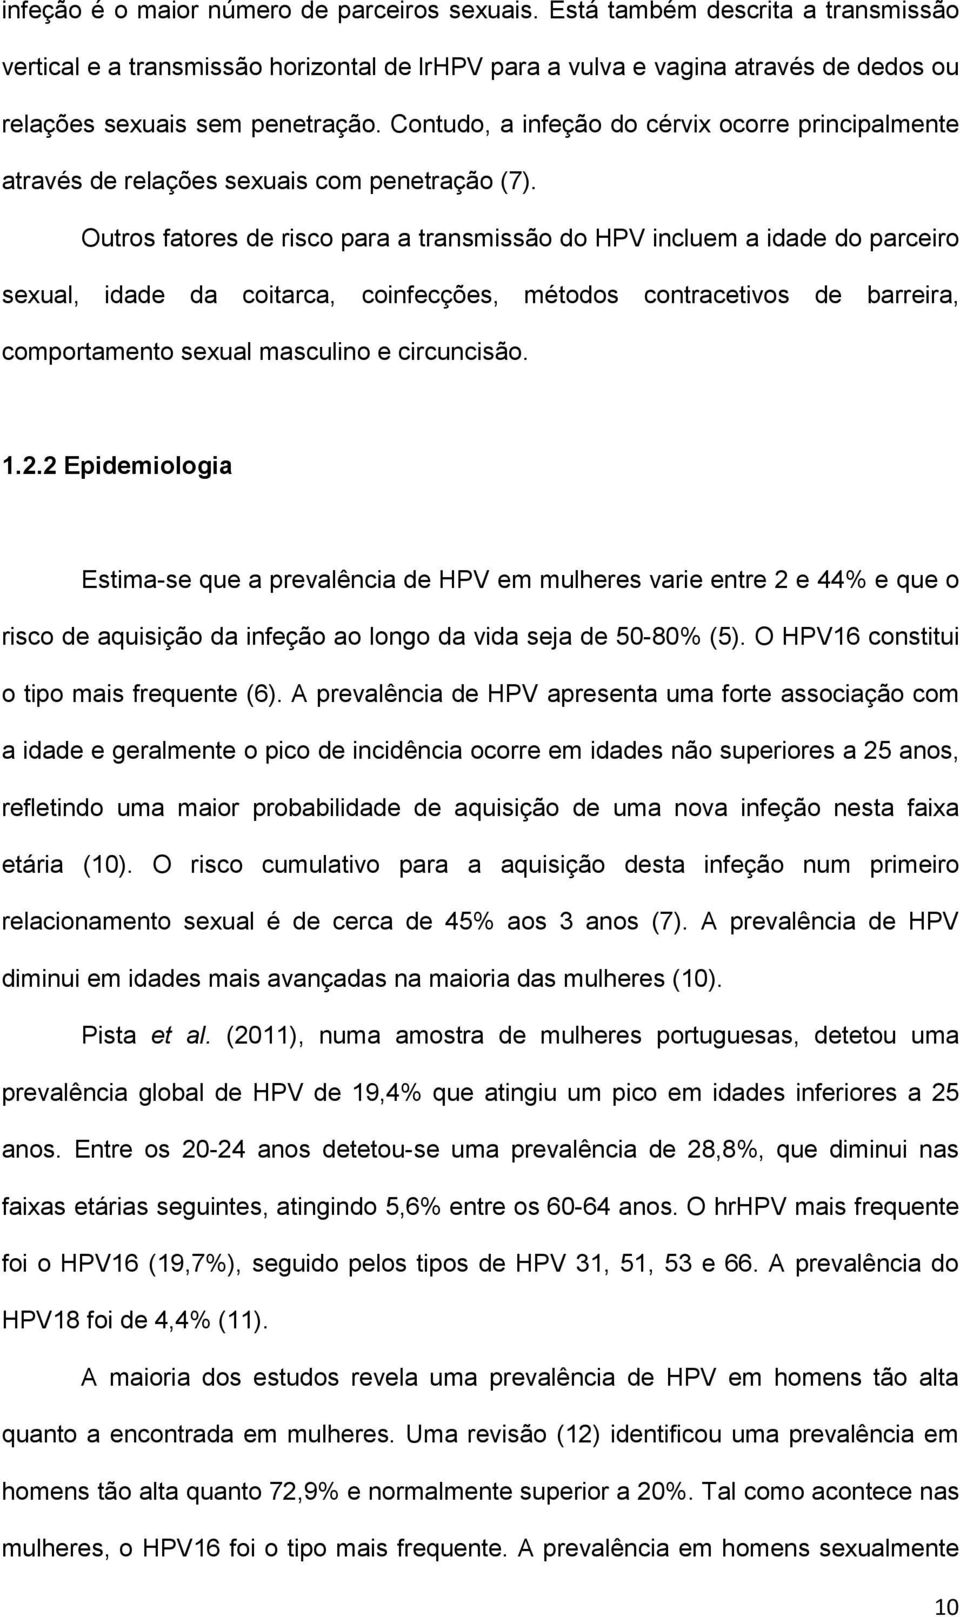 Contudo, a infeção do cérvix ocorre principalmente através de relações sexuais com penetração (7).